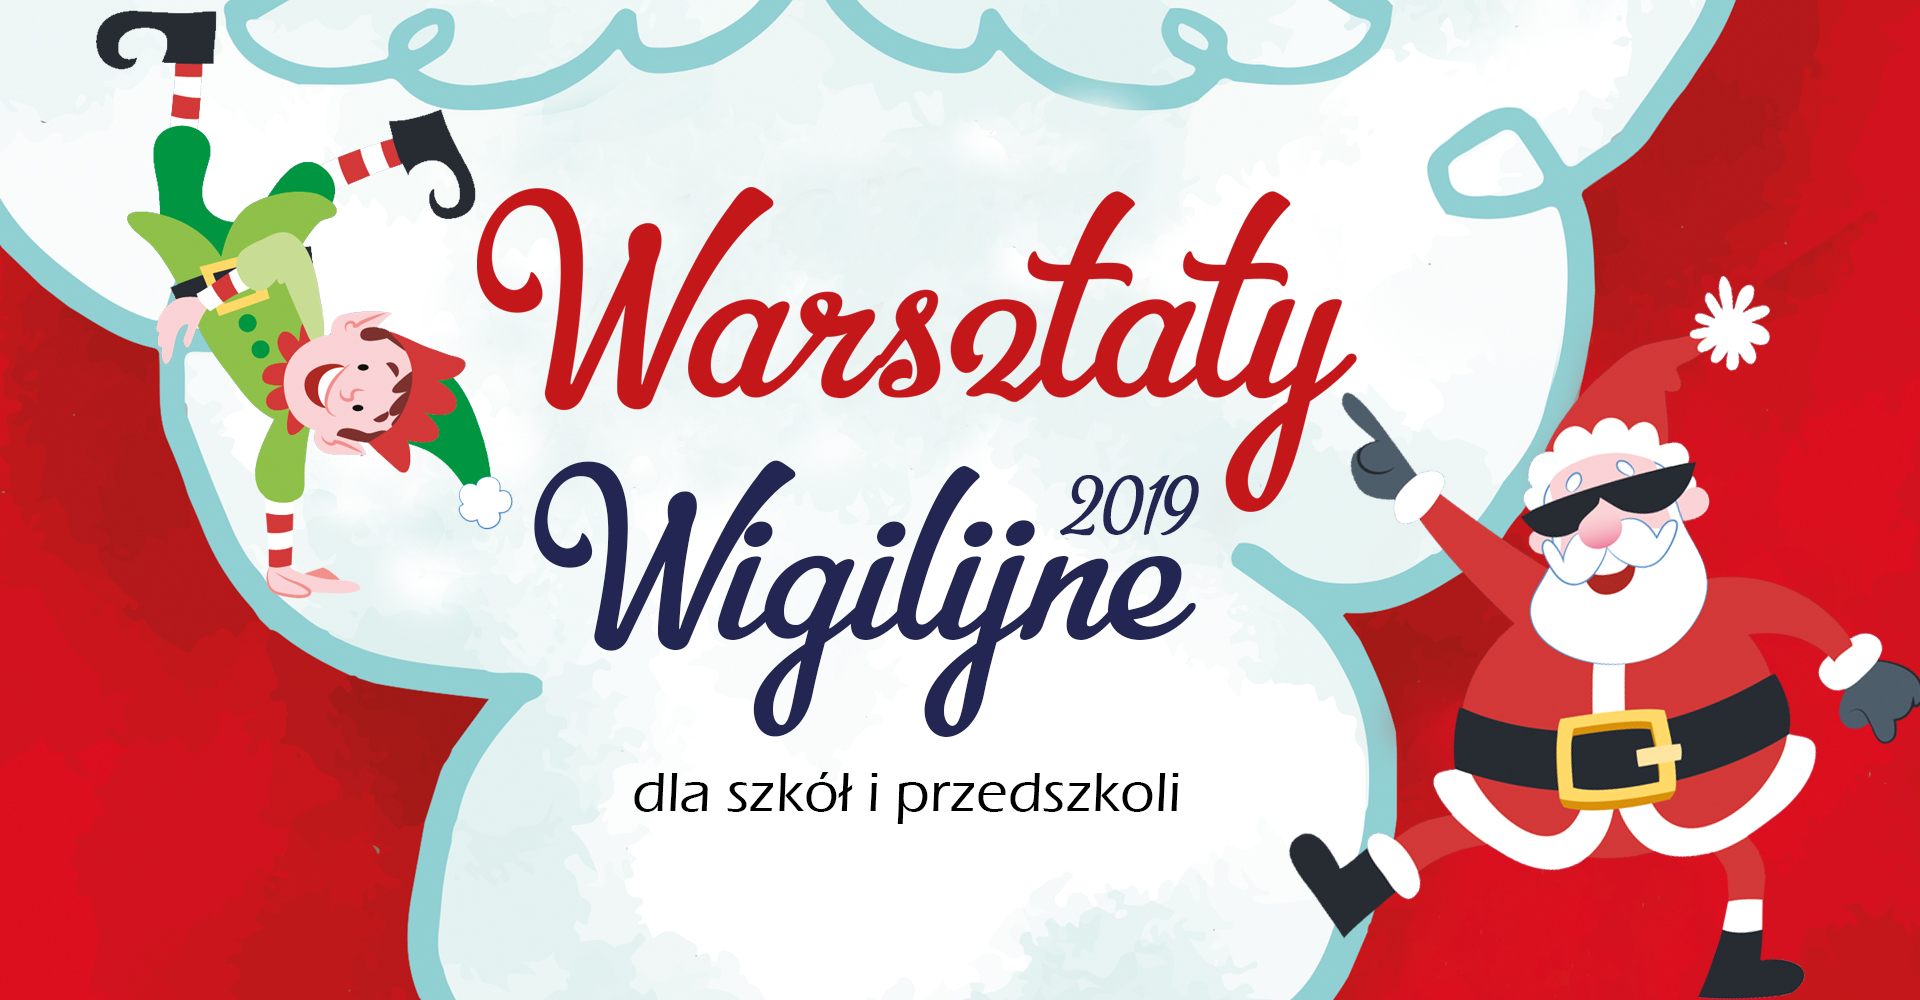 Warsztaty wigilijne 2019